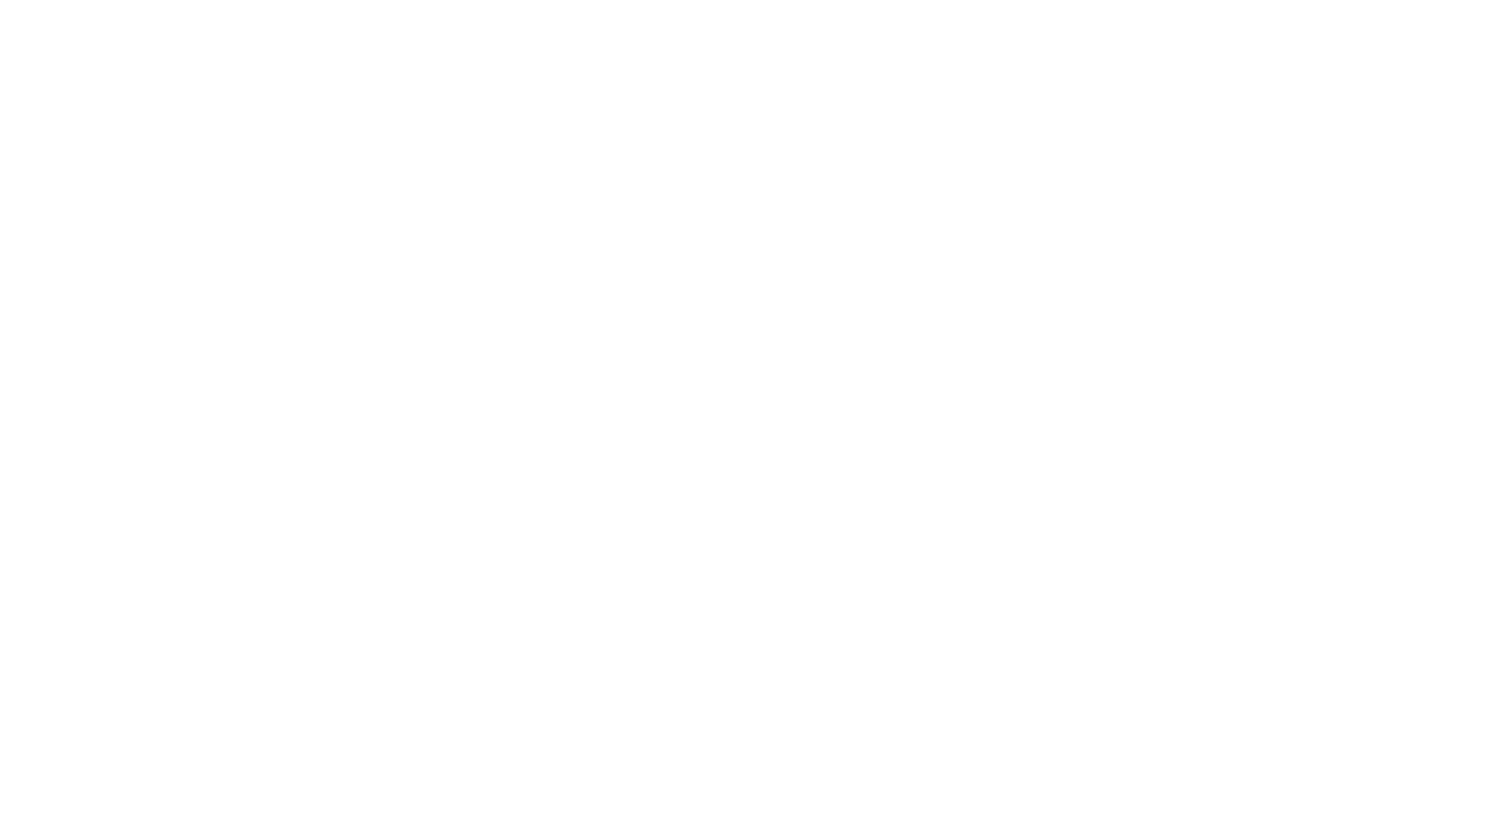 Кейс сервиса BRANDNATION - Фирменный стиль центра раннего развития. Брендинговое агентство BRANDNATION в Москве и Санкт-Петербурге. Услуги: разработка логотипа и фирменного стиля, дизайн упаковки, брендбук, ребрендинг, разработка сайта.